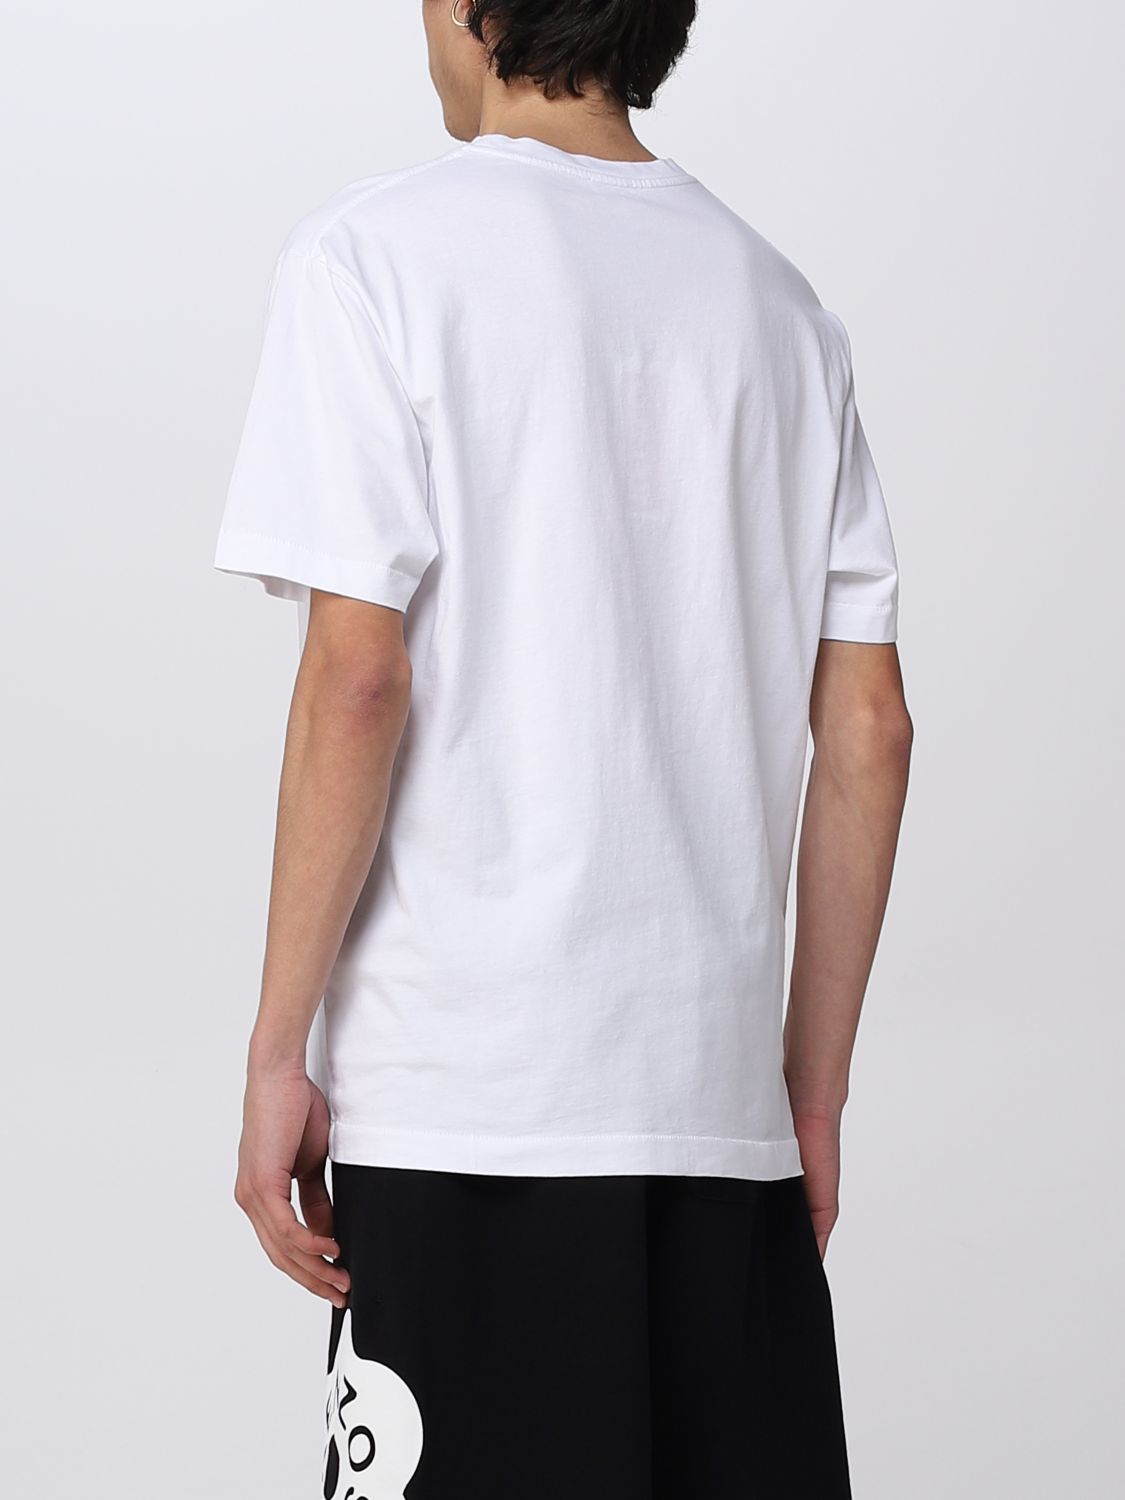 T-shirt Kenzo: T-shirt Boke Flower Kenzo in cotone bianco 3